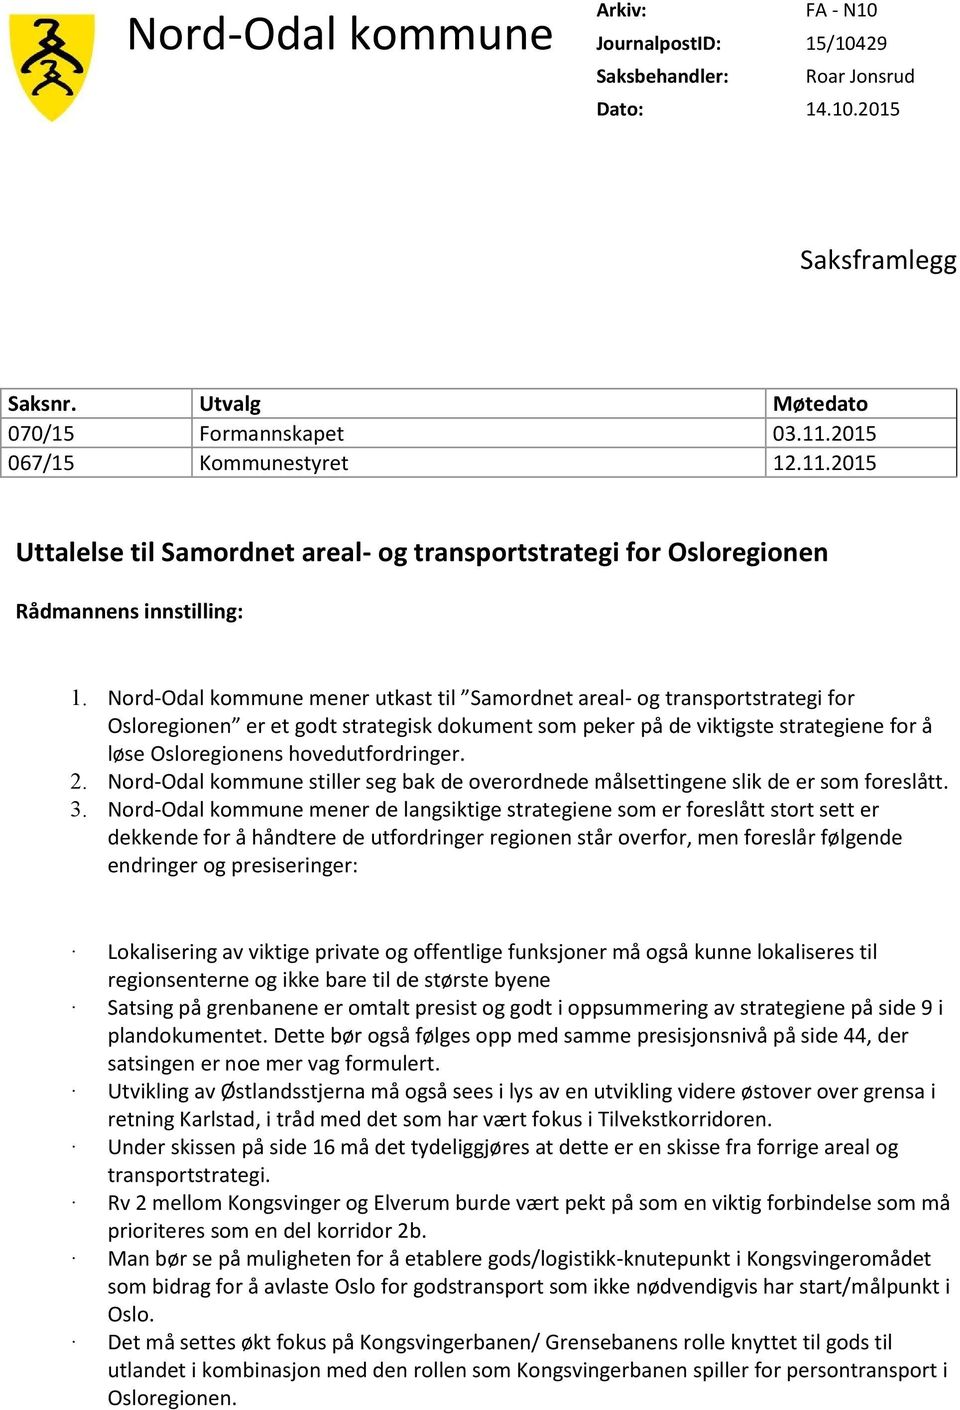 Nord-Odal kommune mener utkast til Samordnet areal- og transportstrategi for Osloregionen er et godt strategisk dokument som peker på de viktigste strategiene for å løse Osloregionens